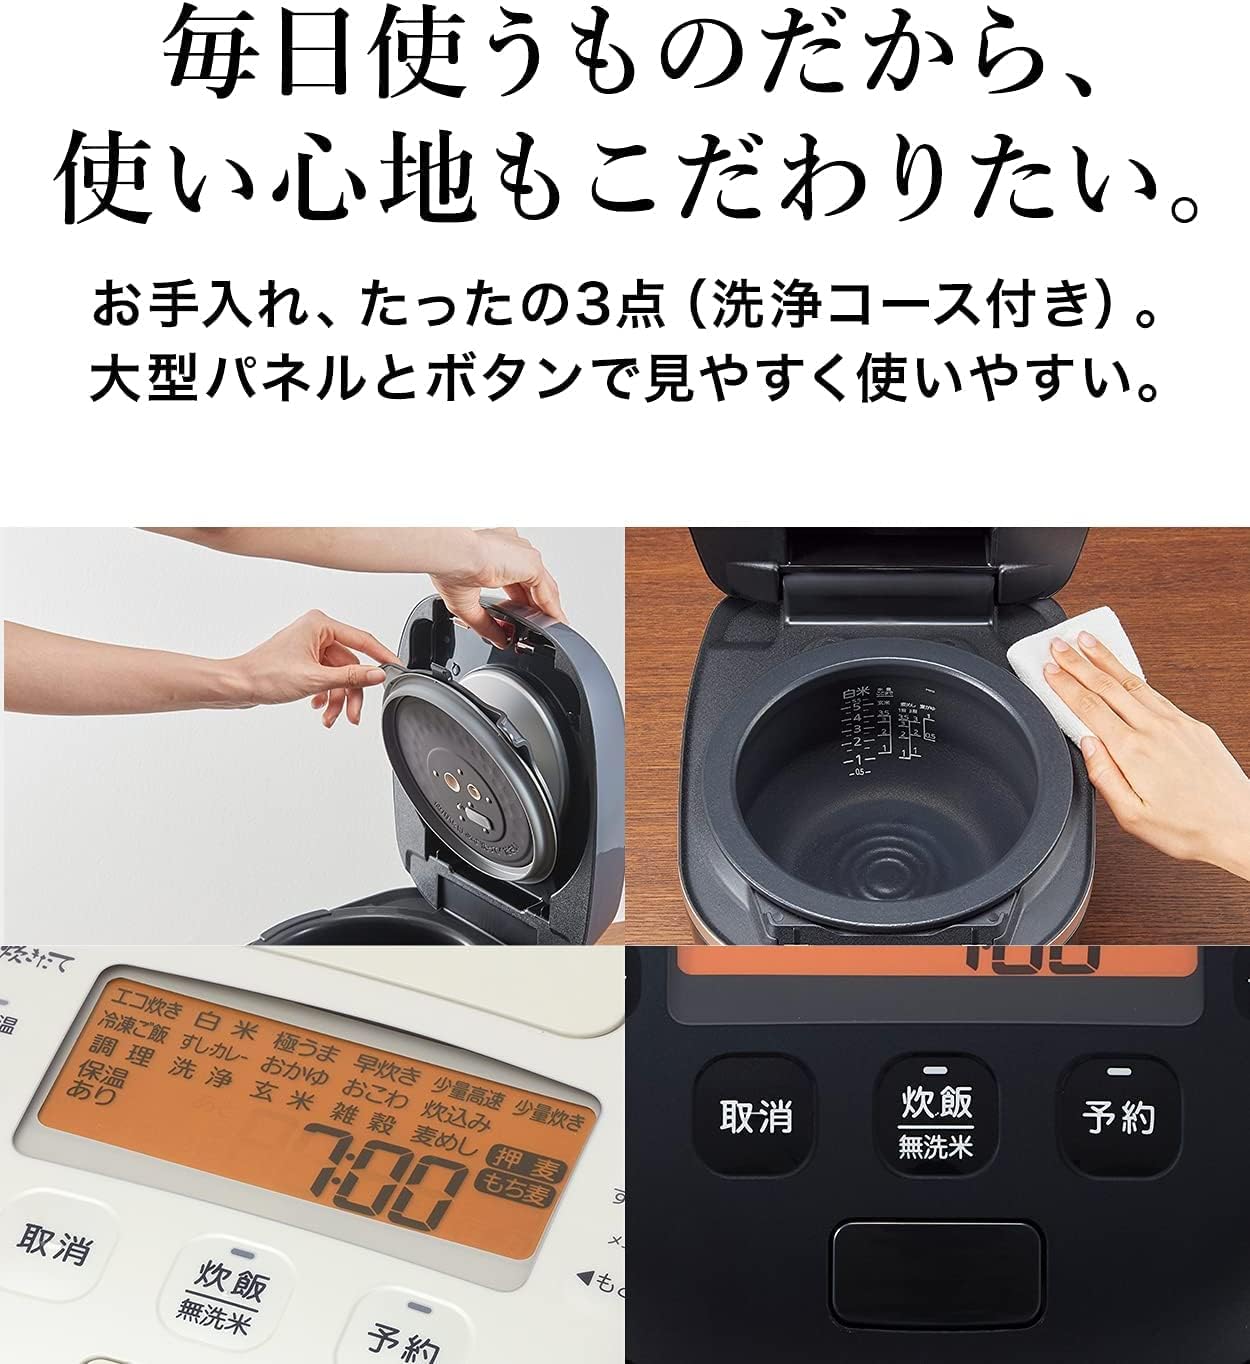 日本品牌 TIGER 虎牌 炊飯電子鍋(TIGER) 5.5合 壓力IH式電鍋 泡火烹飪 少量美味烹飪 米白色 JPI-A100 WO_YOUTW_584